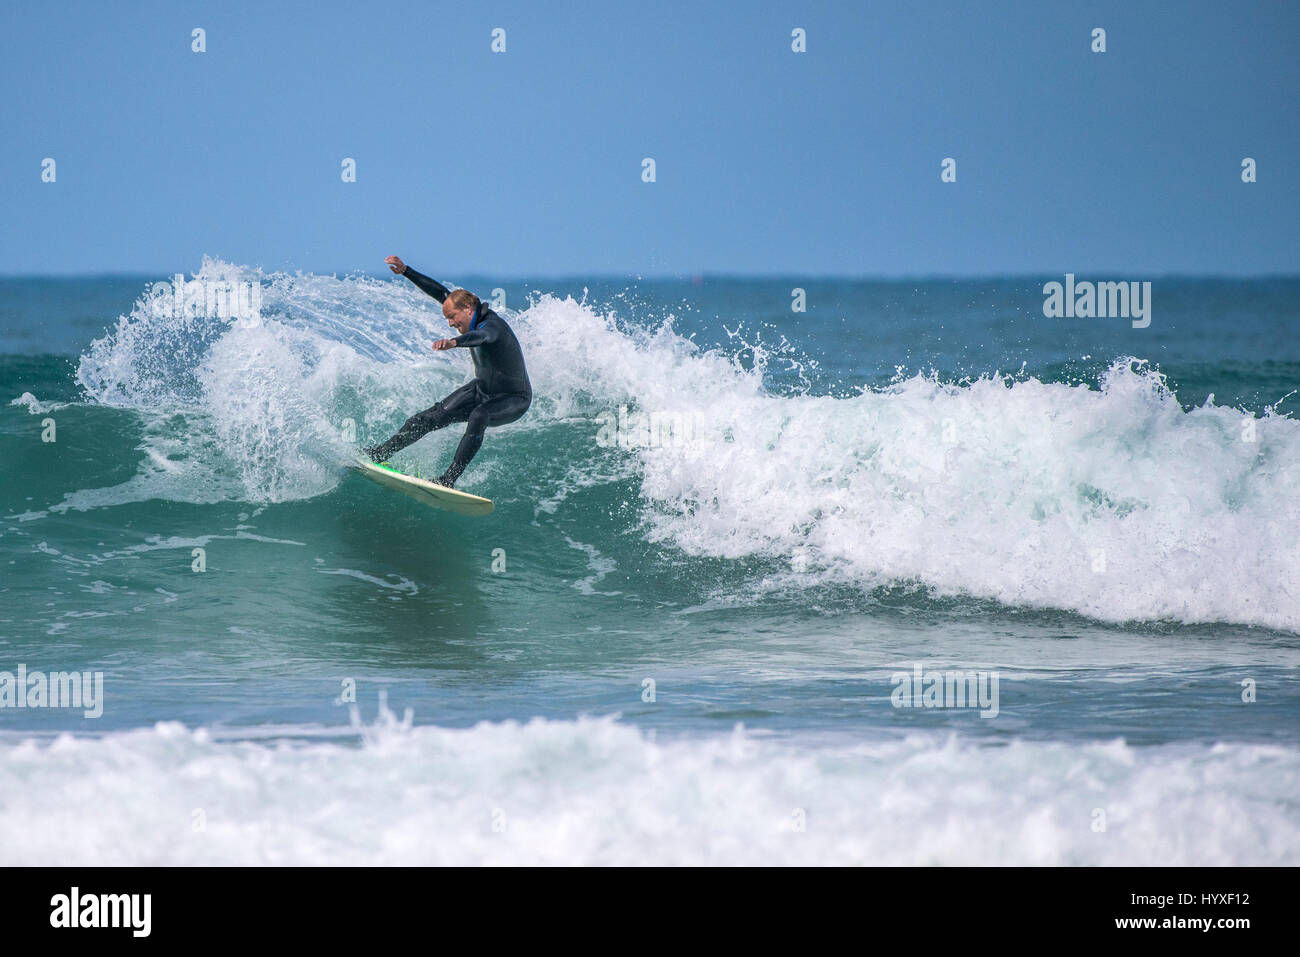 UK Surfen Surfer körperliche Aktivität Wassersport Skill spektakuläre Action Freizeit Lifestyle Freizeit Hobby Gnarly Stockfoto